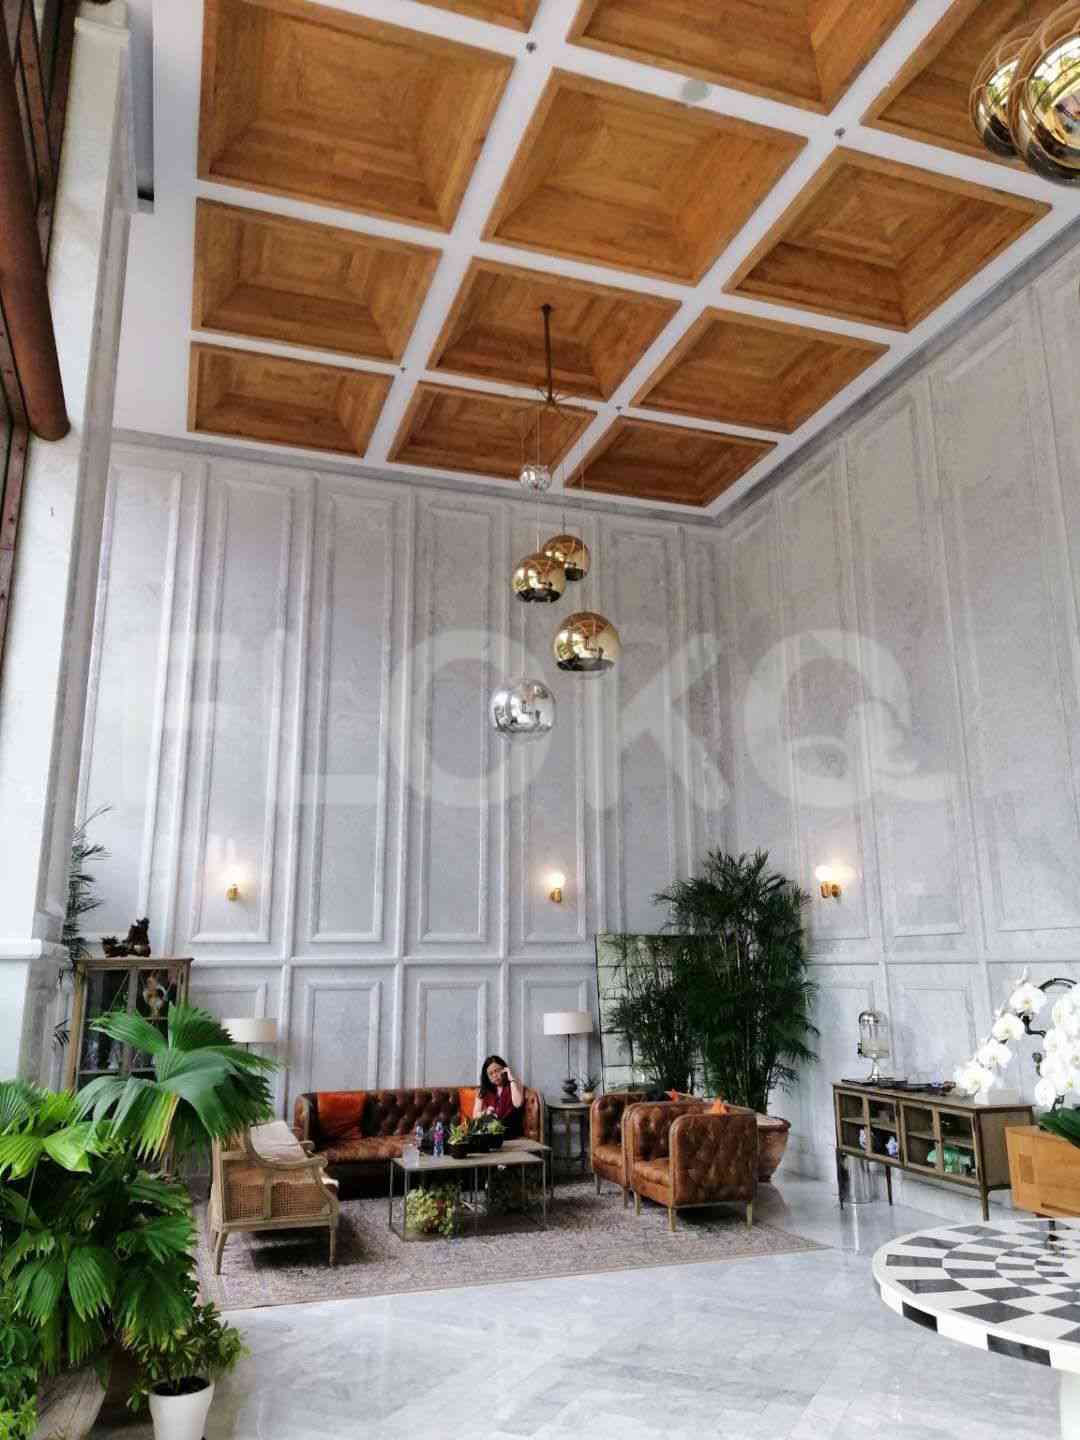 2 Bedroom on 18th Floor for Rent in Sudirman Suites Jakarta - fsu69e 22